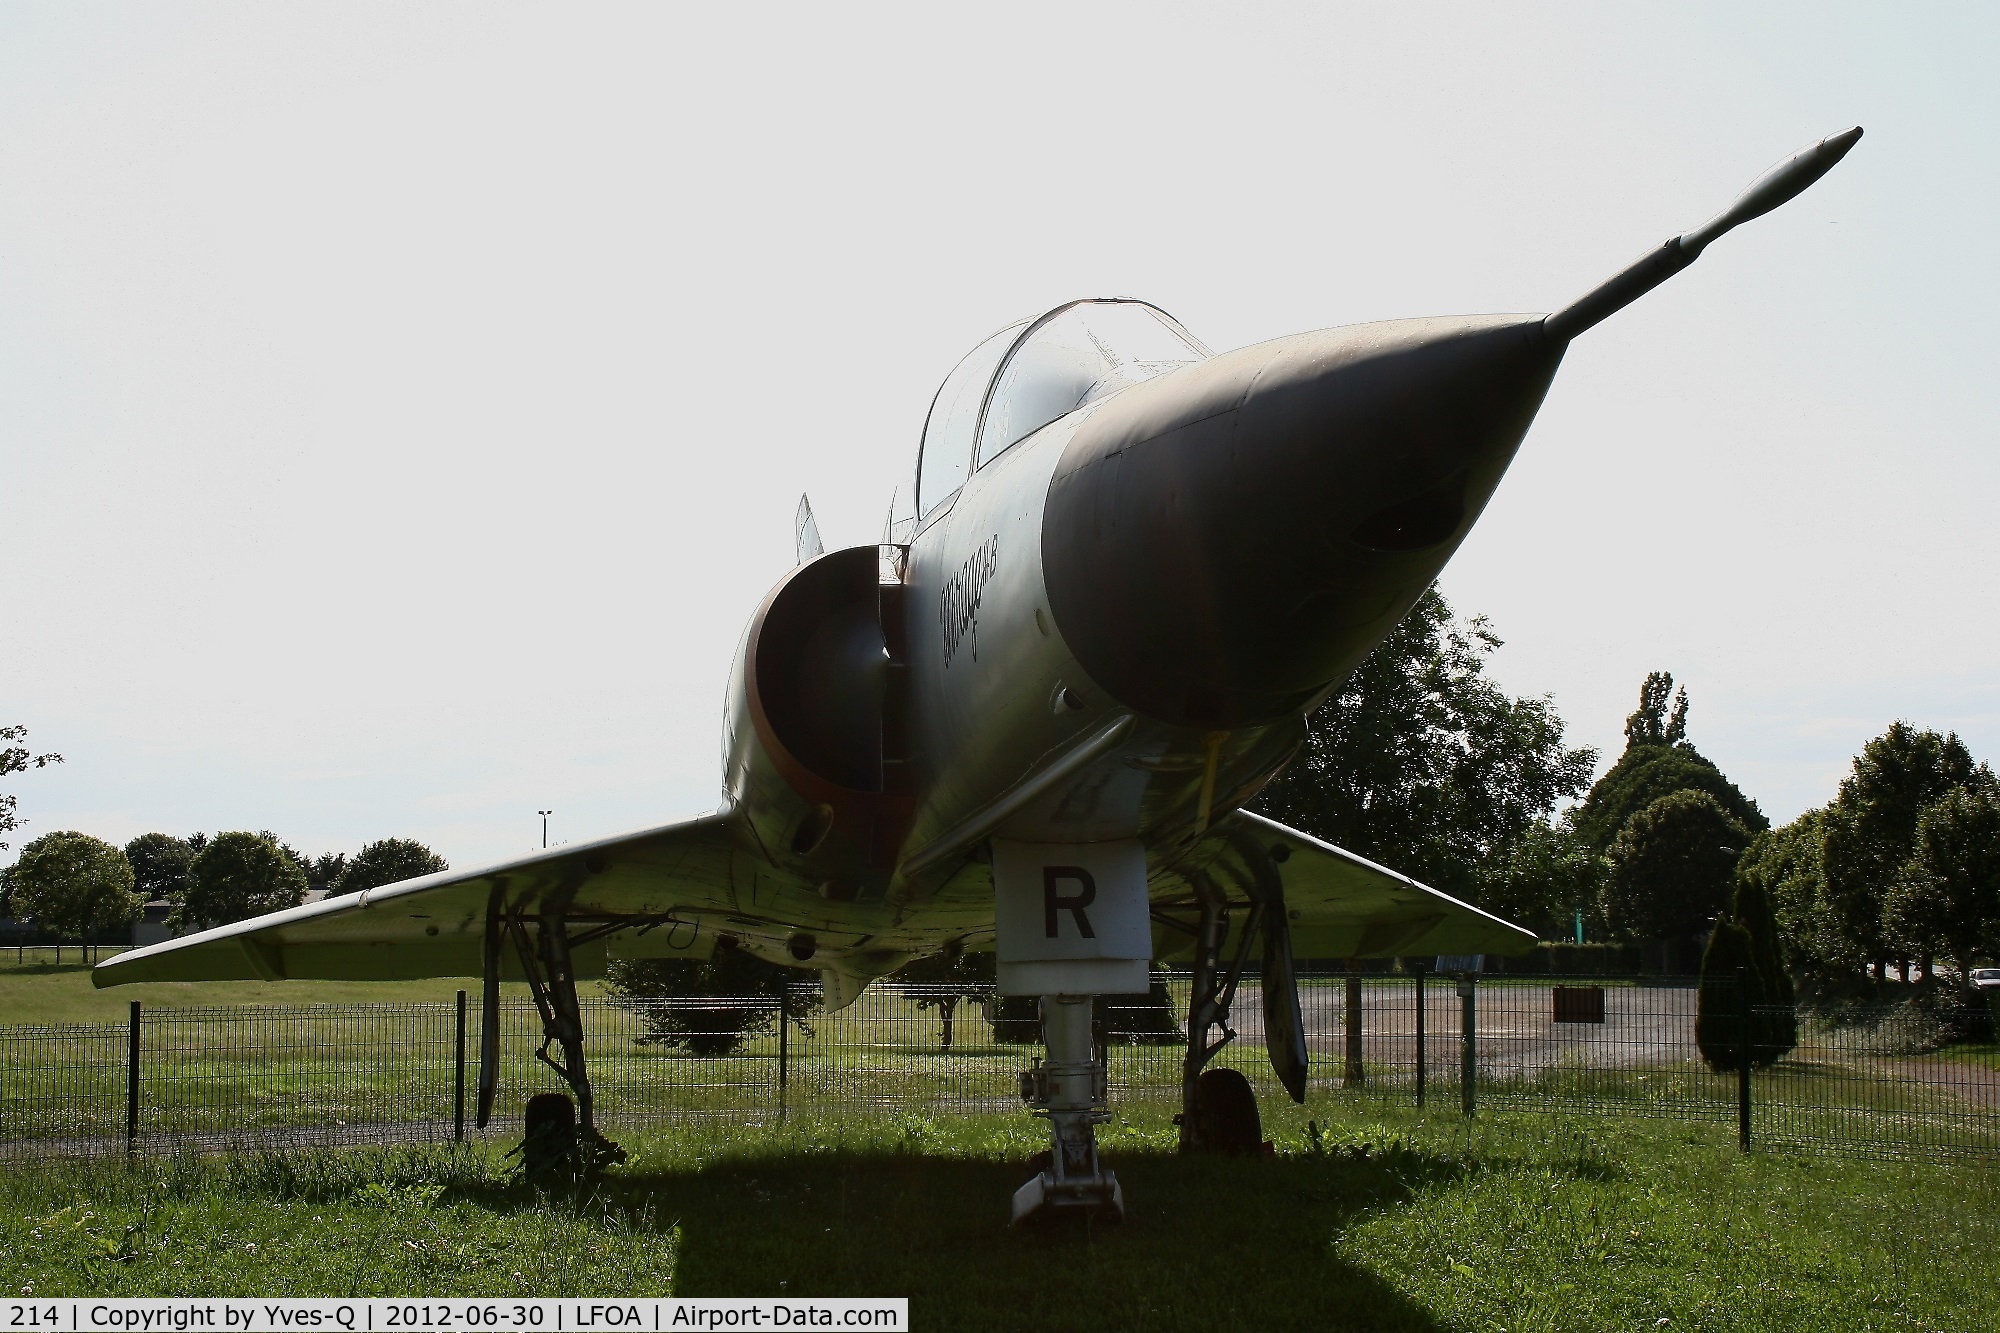 214, Dassault Mirage IIIB C/N 214, Dassault Mirage IIIB, Avord